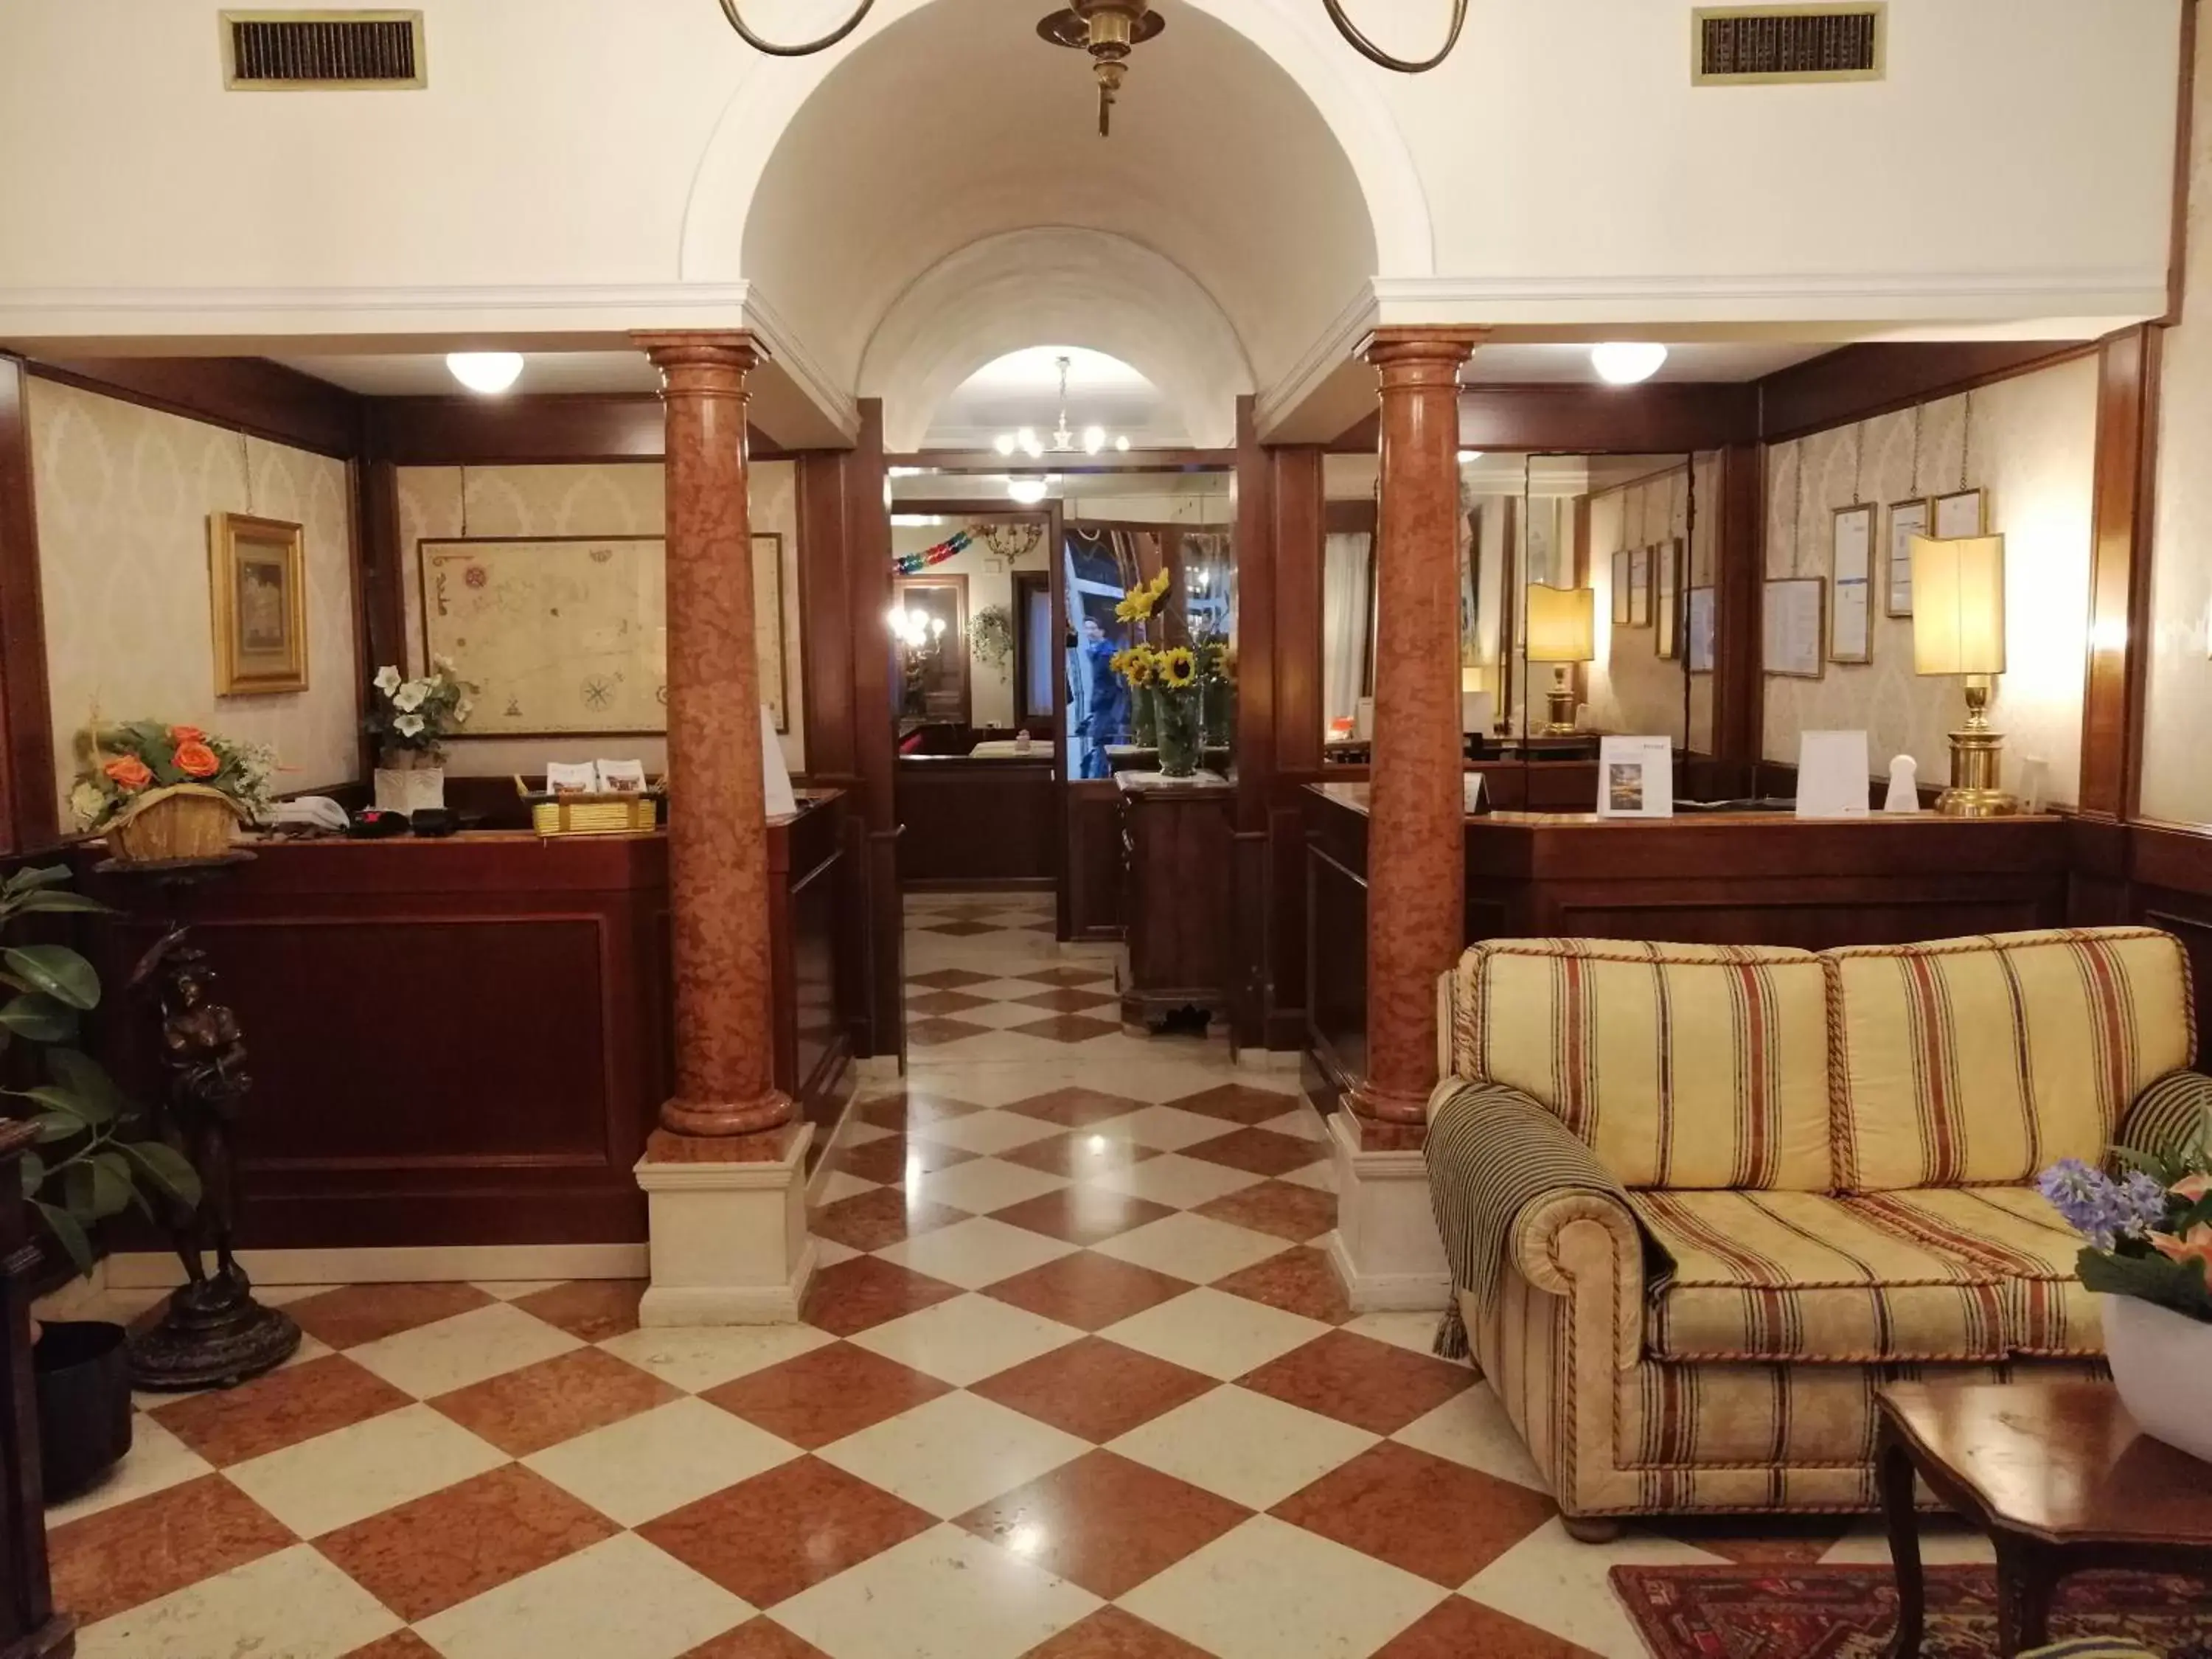 Lobby or reception, Lobby/Reception in Hotel Falier